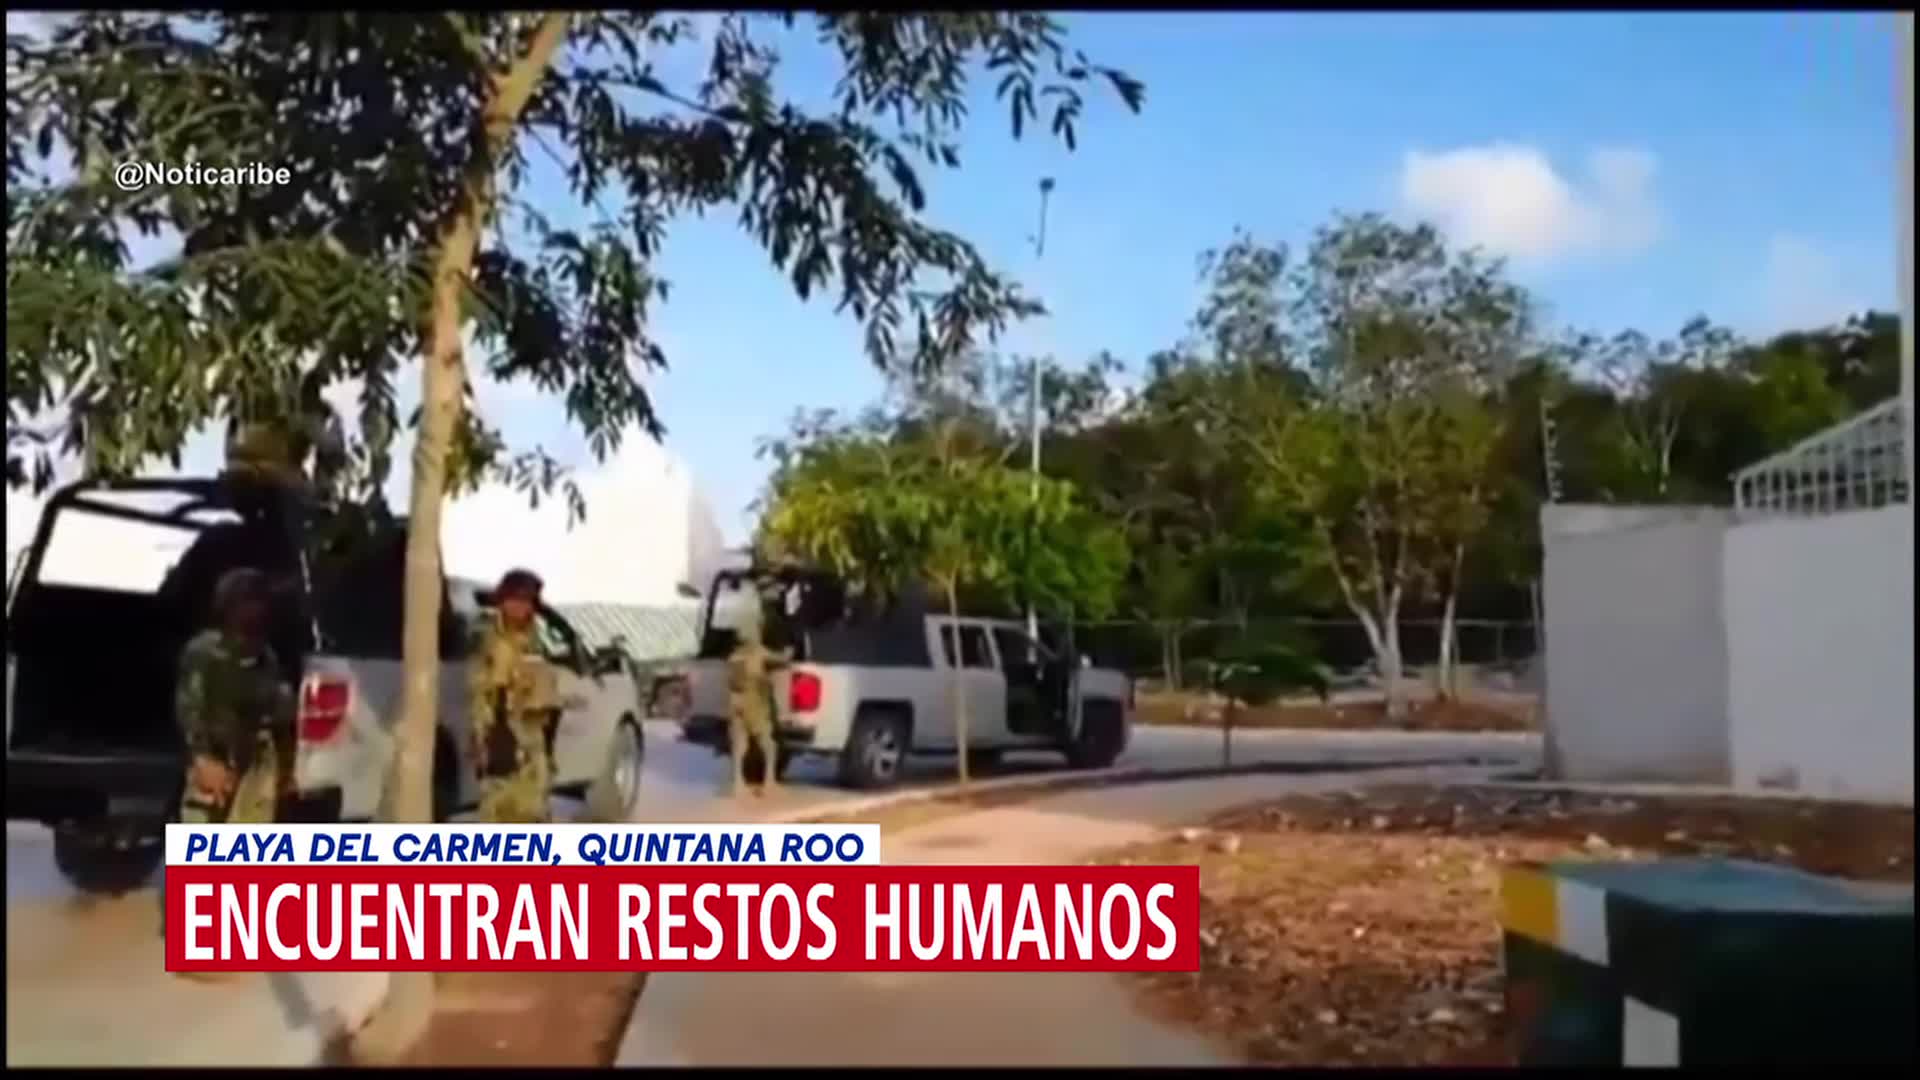 Encuentran restos humanos en Playa del Carmen, Quintana Roo